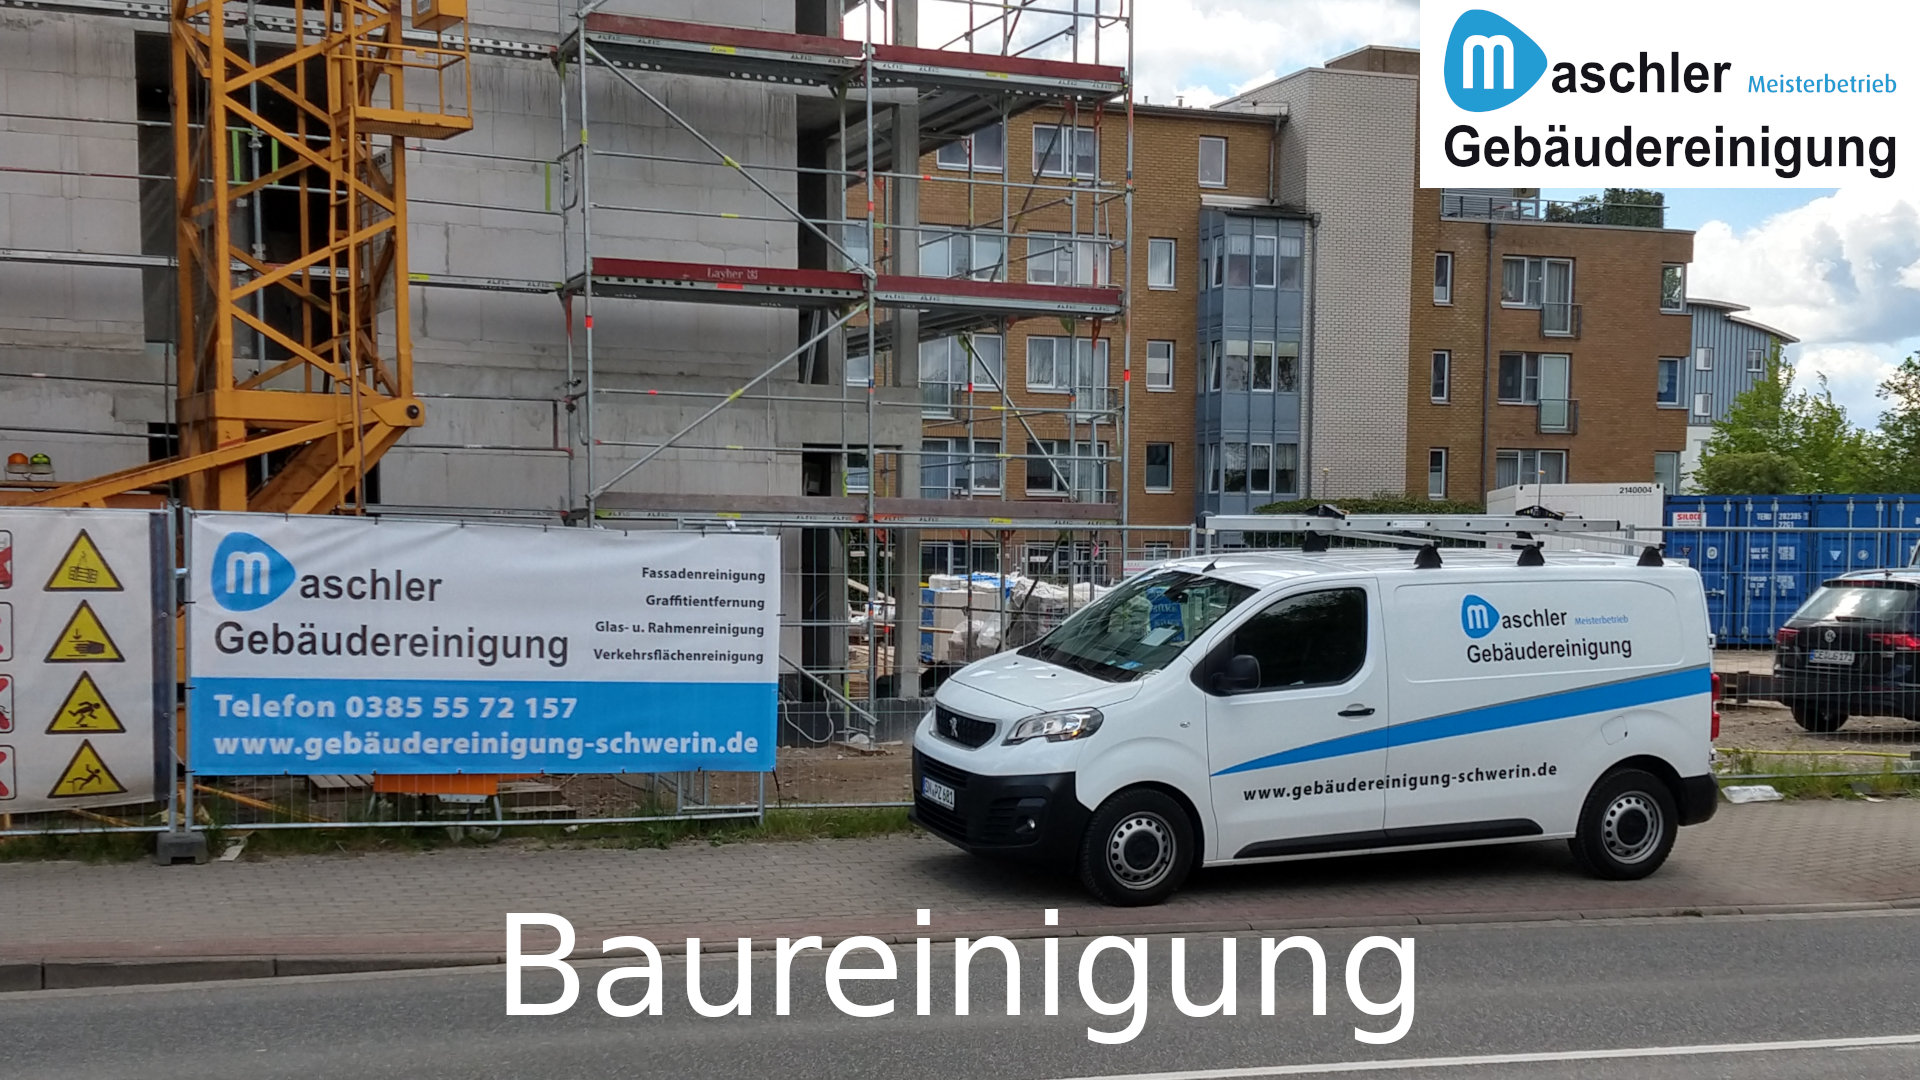 Baureinigung - Gebäudereinigung Maschler GmbH